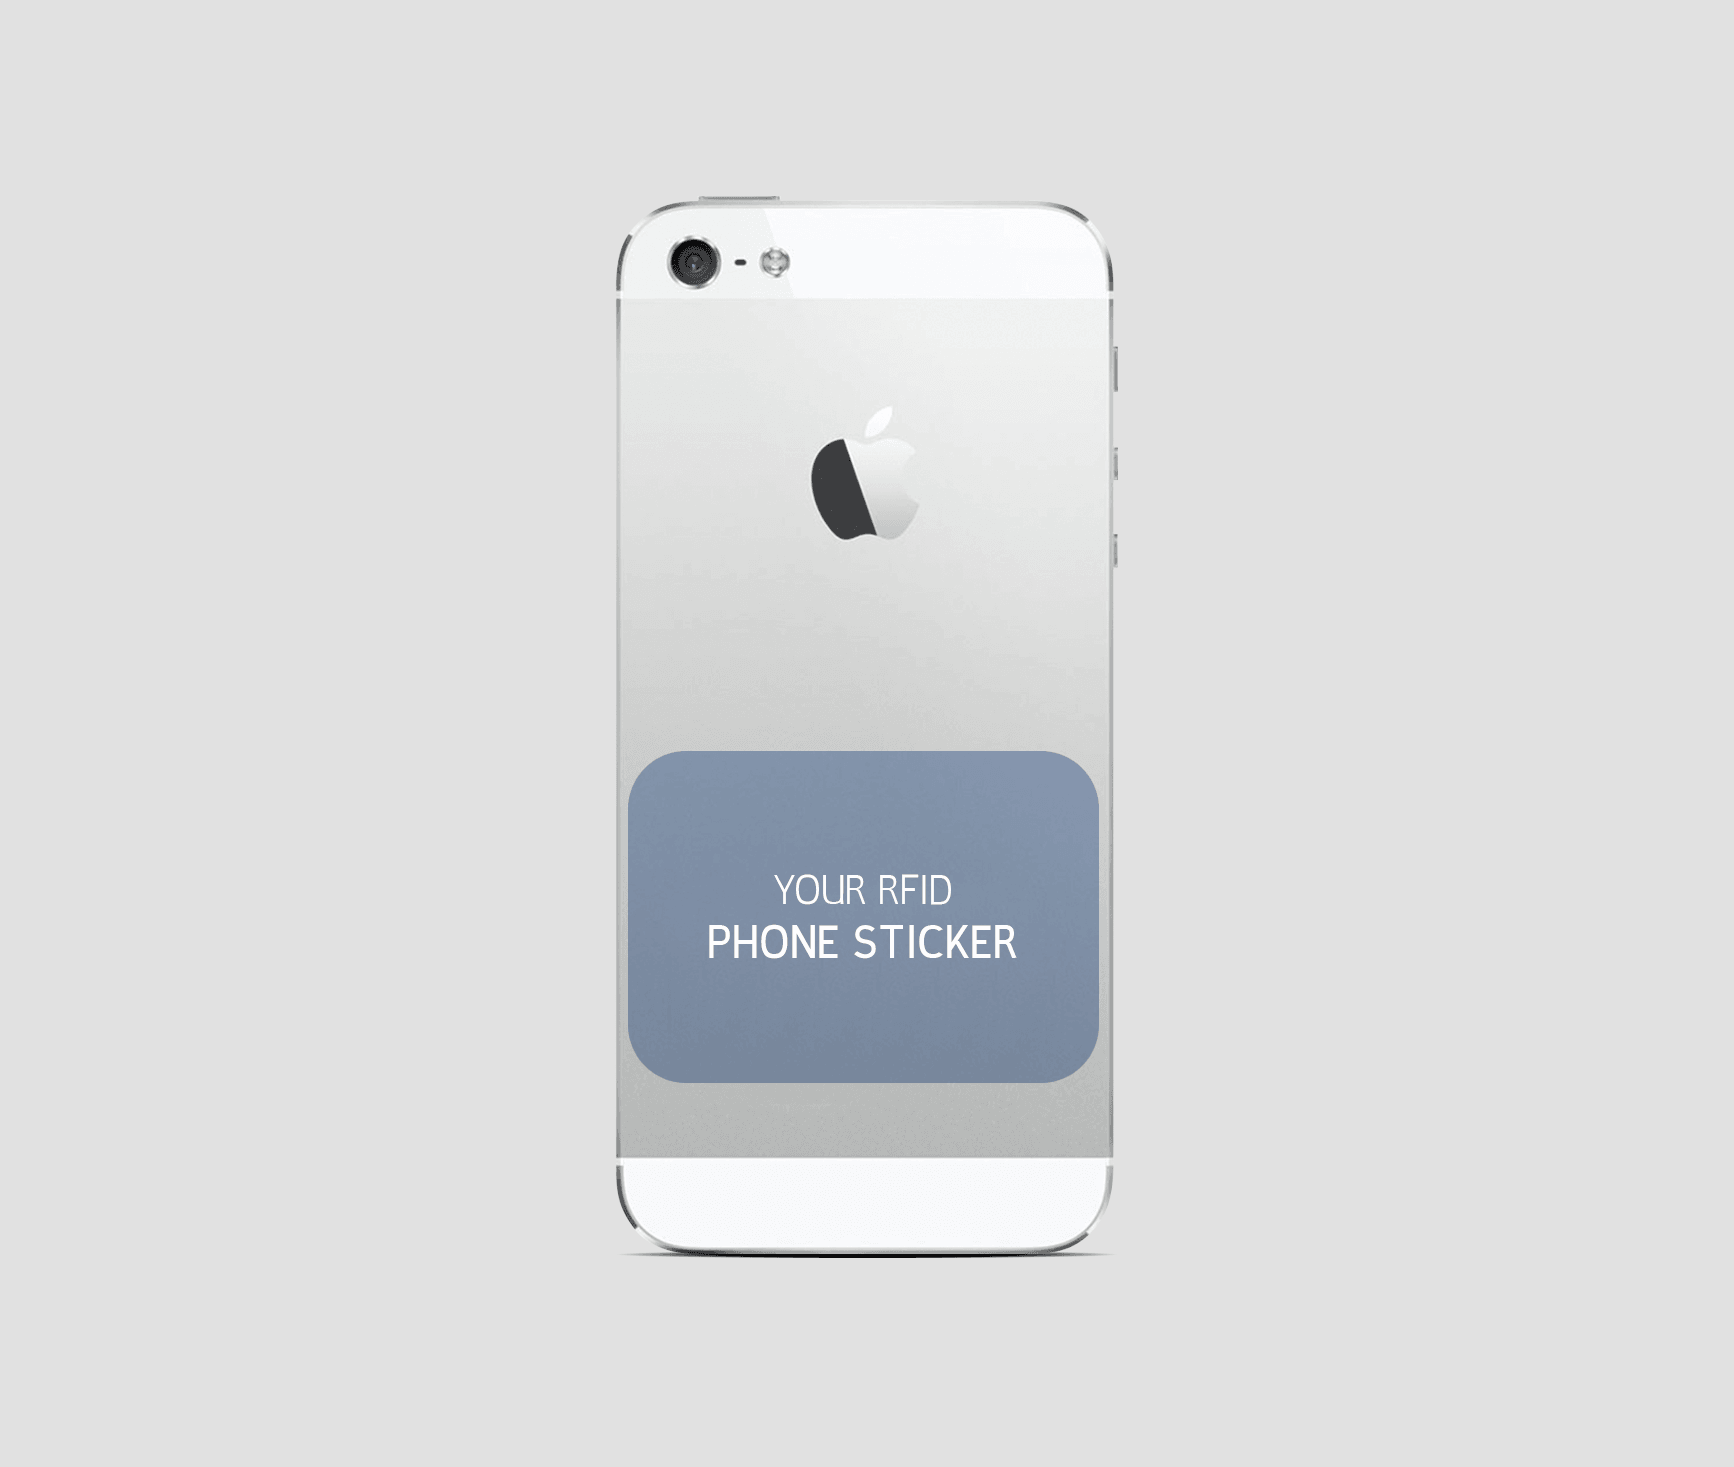 Phone sticker ou smart object intégré à la carte